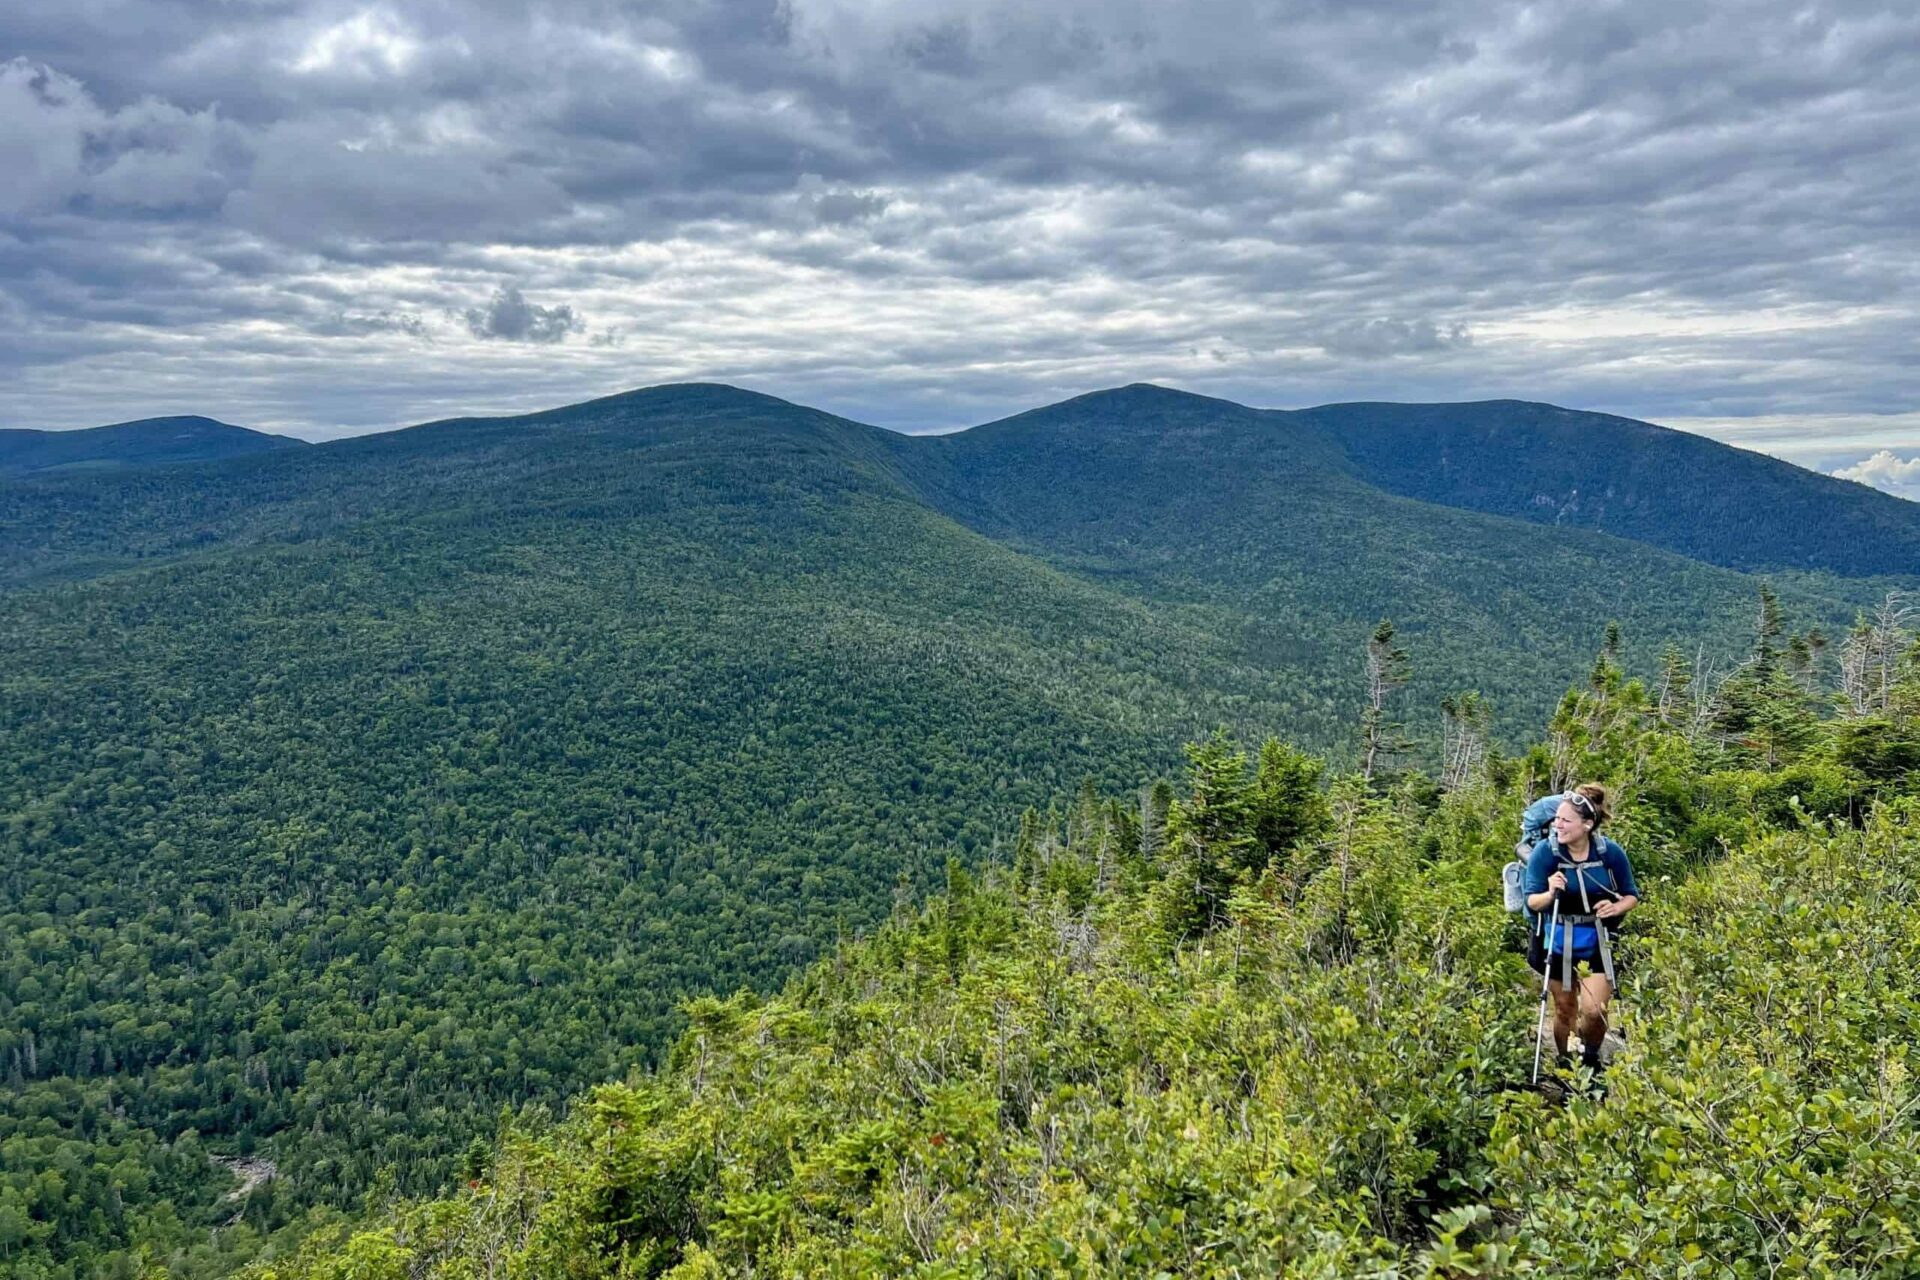 AT Thru-Hiker Cindy Scott's Appalachian Trail Gear List